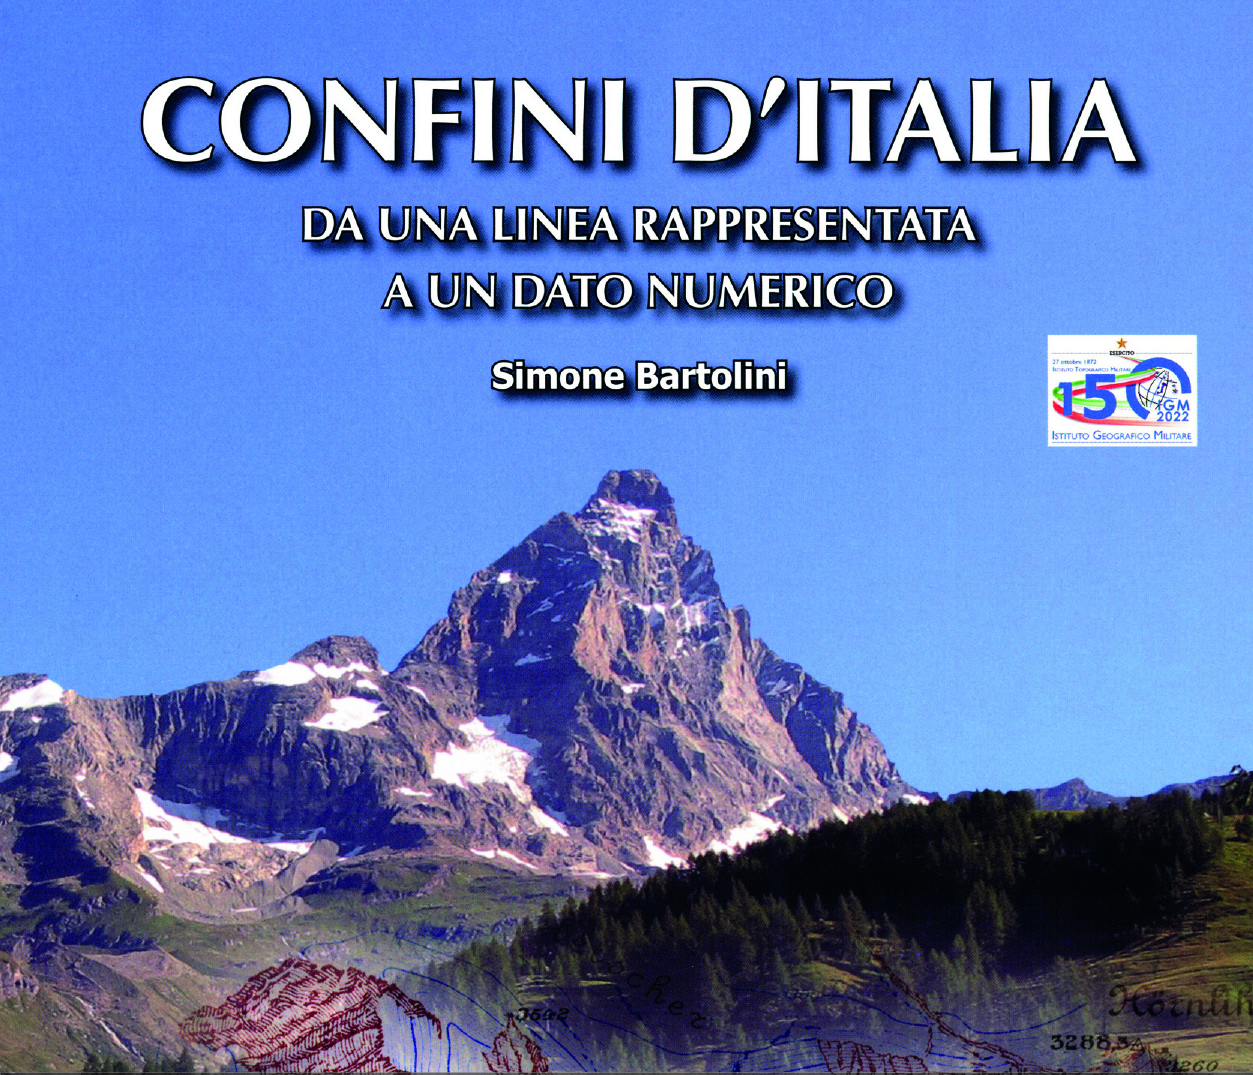 Buchcover und Einladung zur Buchvorstellung "Confini d'Italia"